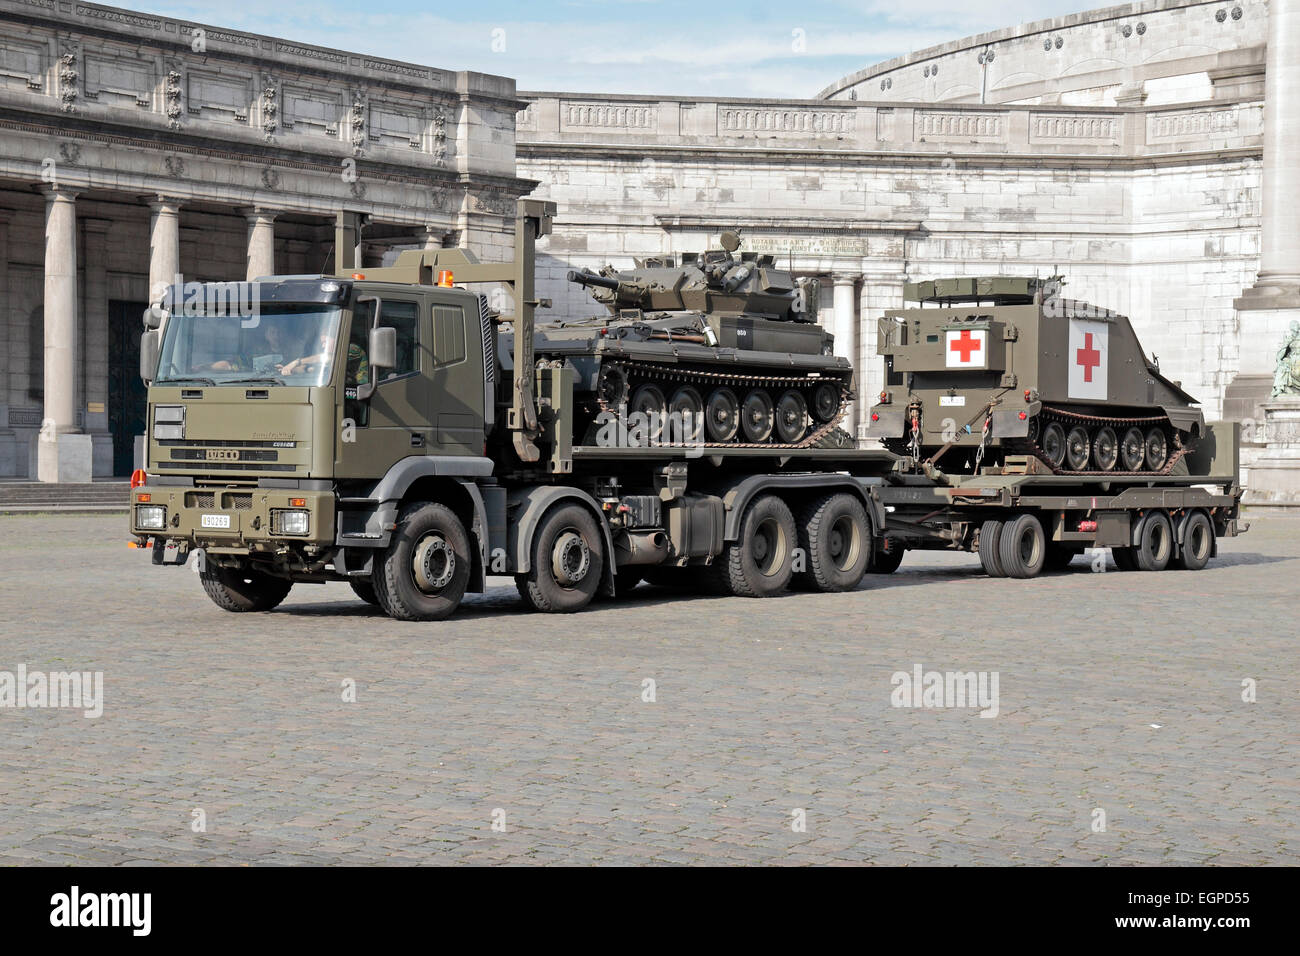 Ein IVECO Eurotrakker tank Transporter mit einem leichten Panzer (Alvis  Skorpion?) und verfolgt medizinische Fahrzeug in Brüssel, Belgien  Stockfotografie - Alamy